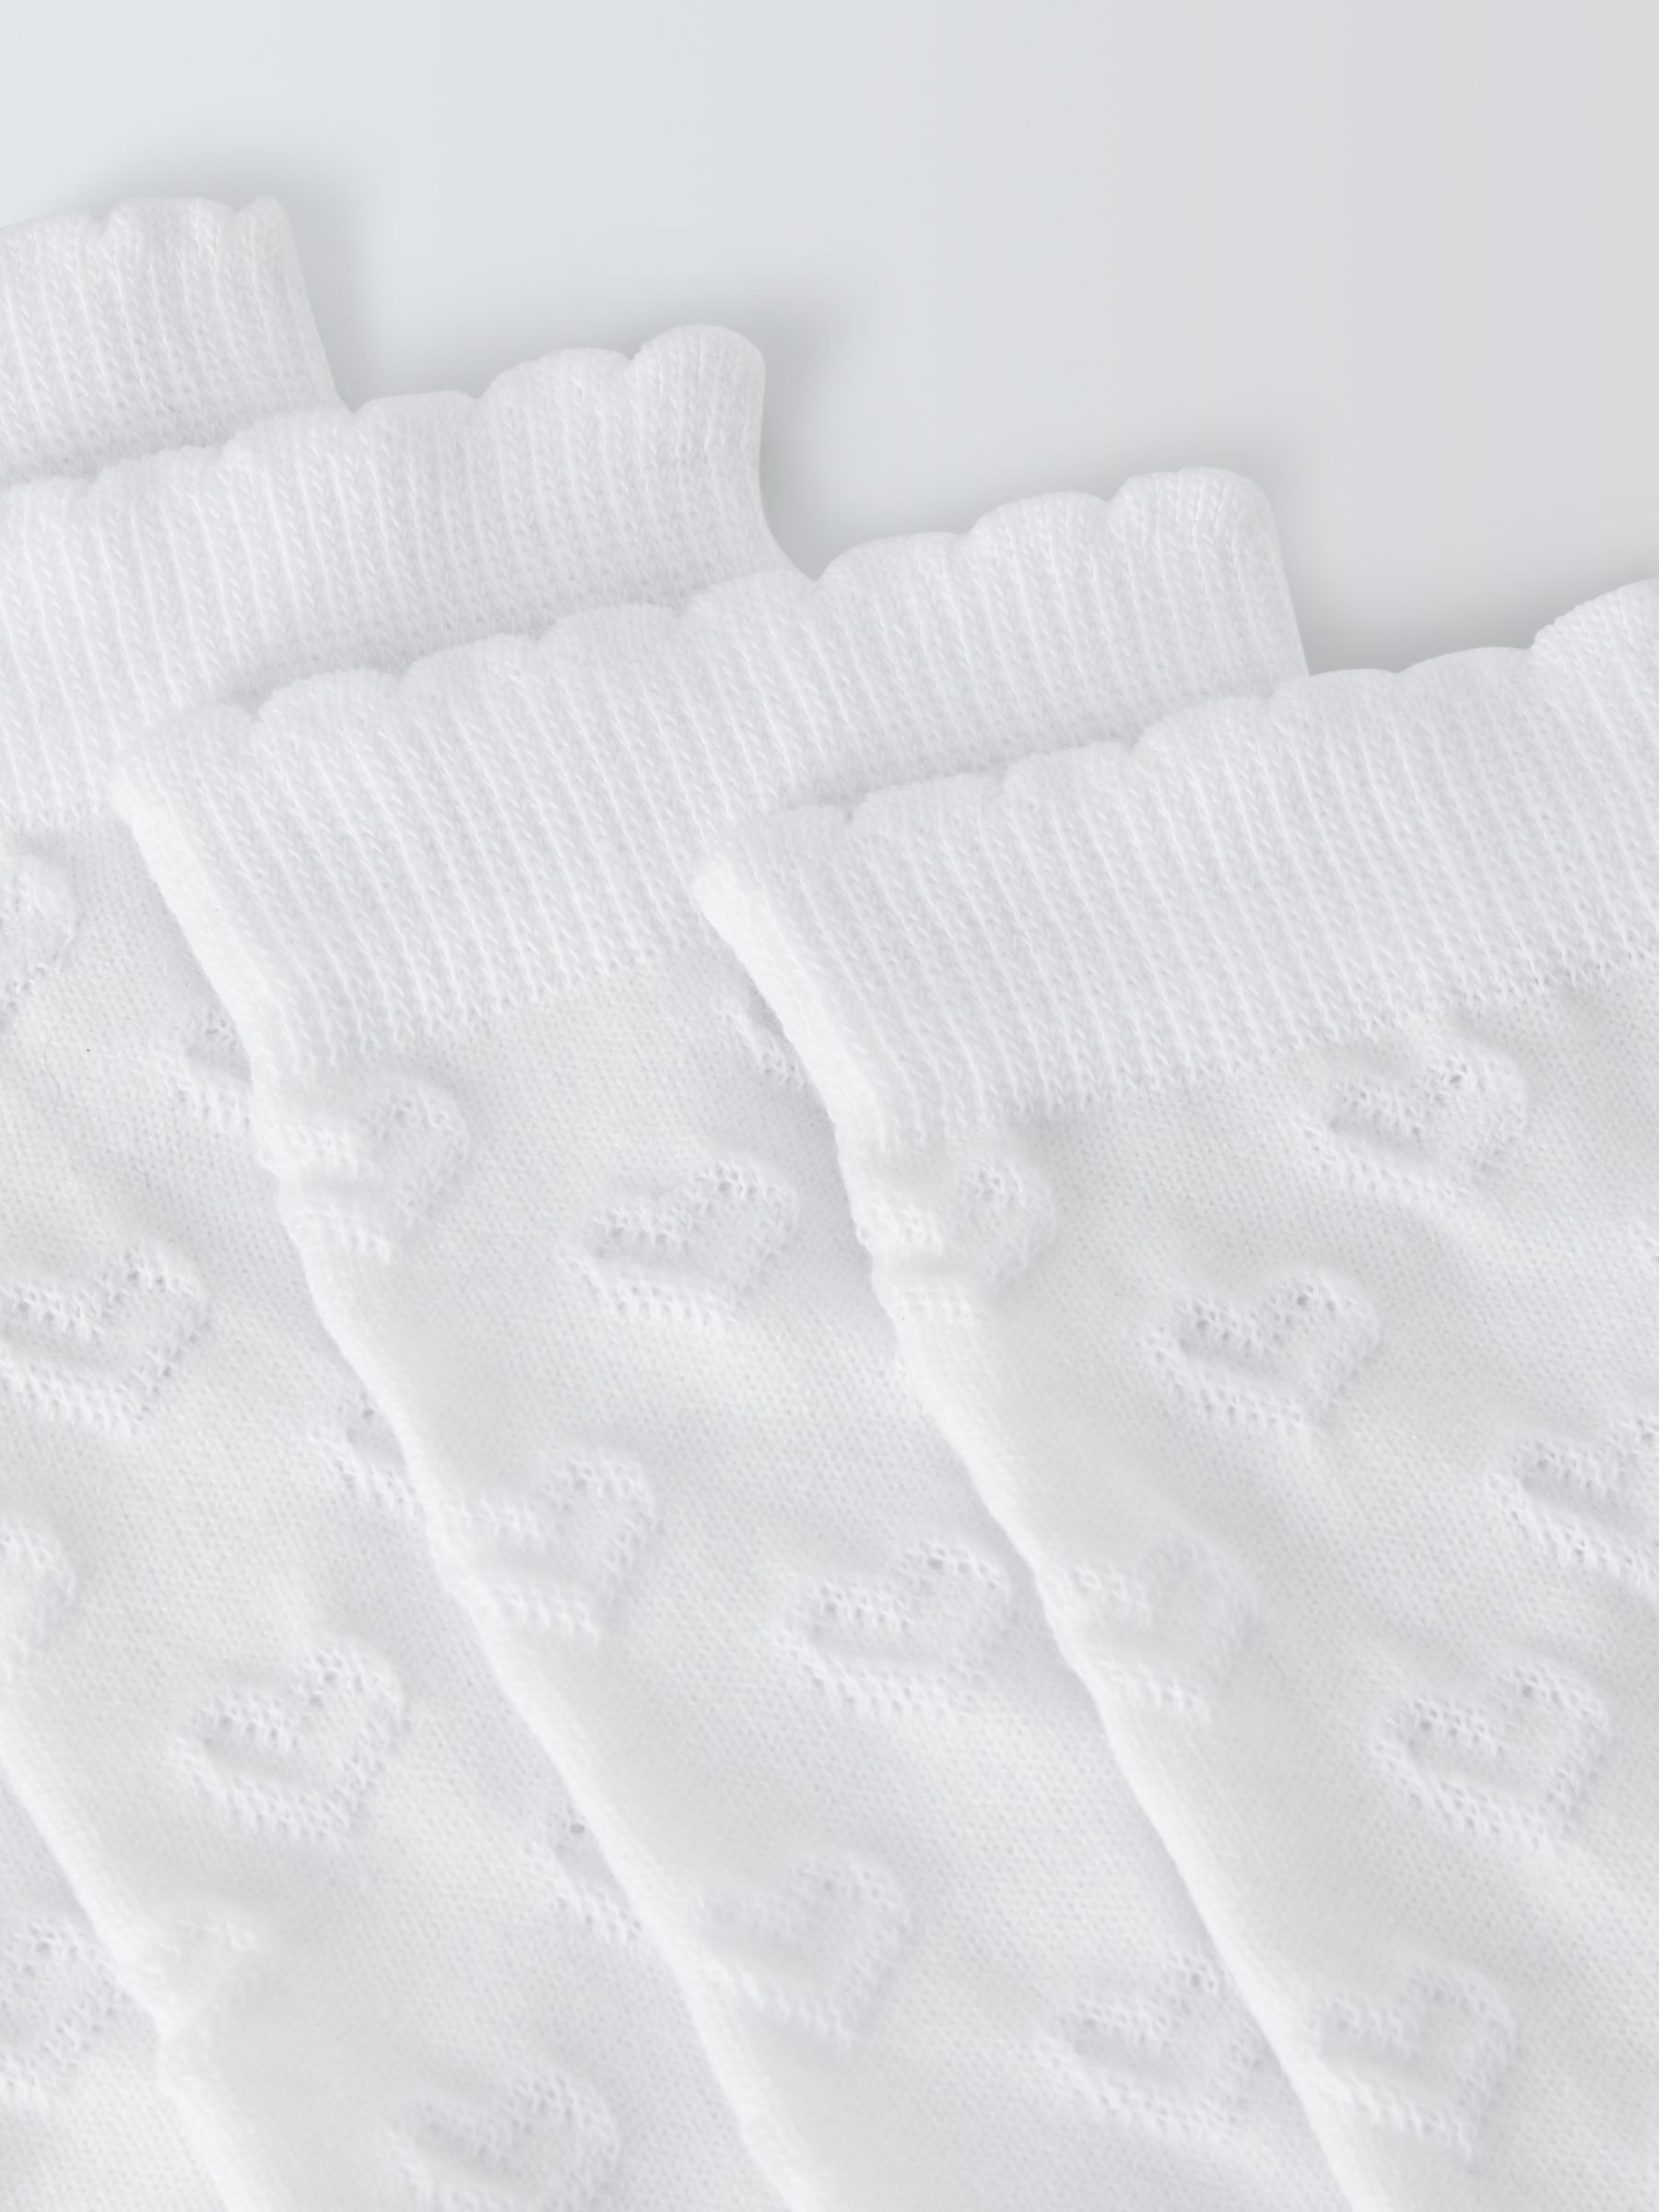 Buy John Lewis Kids' Raised Heart Socks, Pack of 5, White Online at johnlewis.com